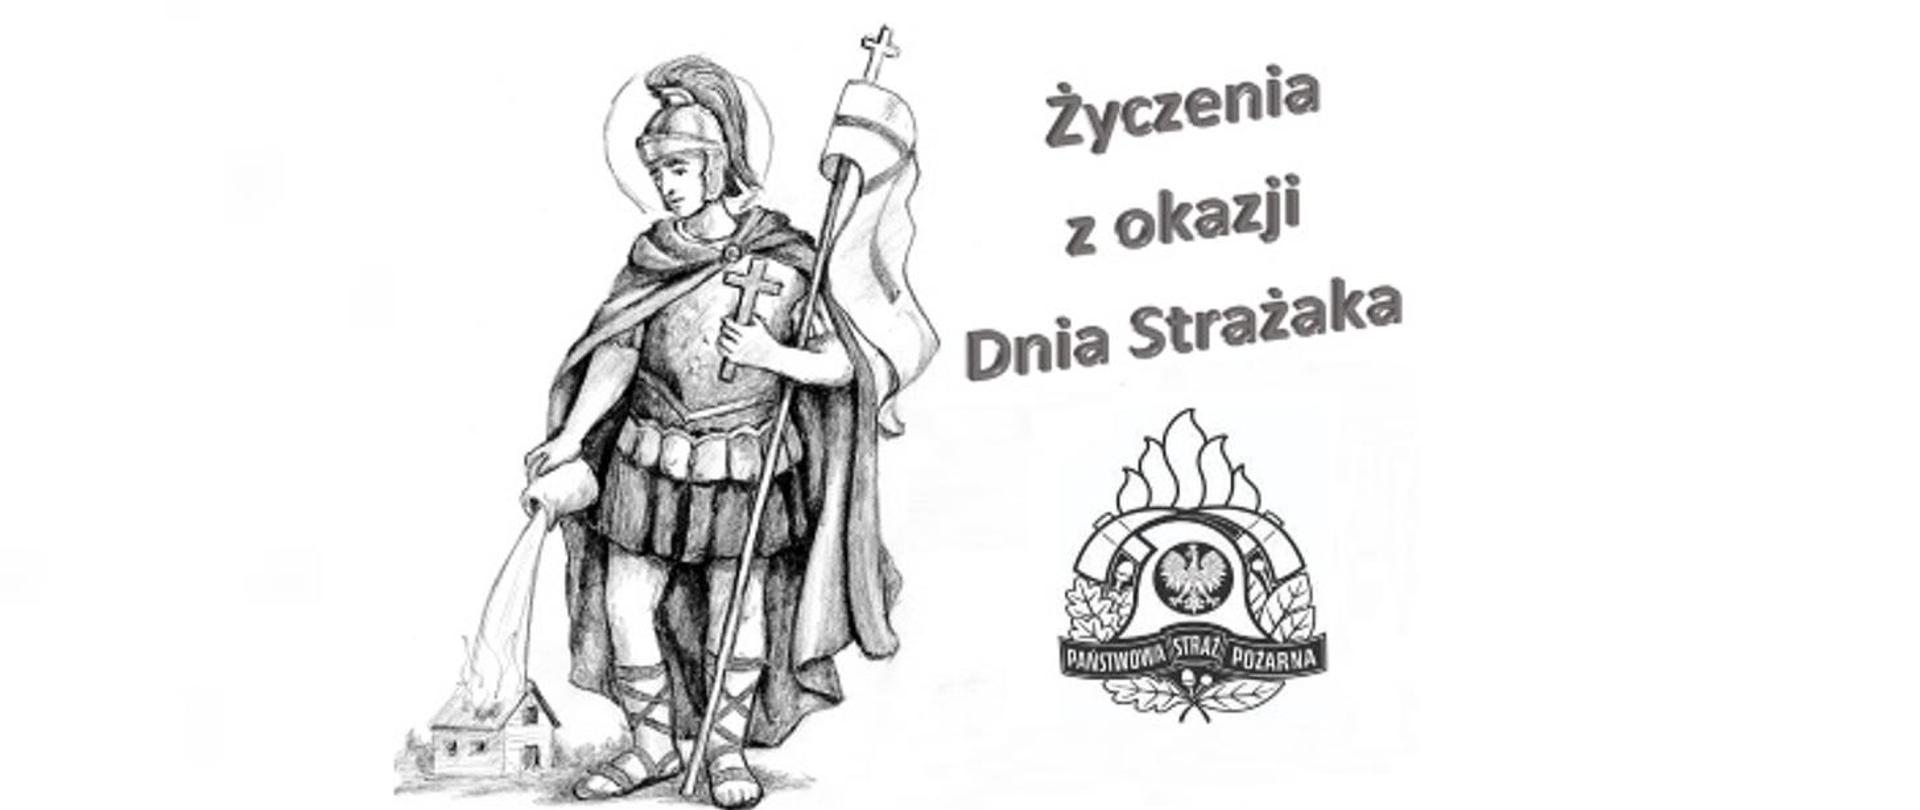 Grafika przedstawia figurkę Świętego Floriana z napisem Życzenia z okazji Dnia Strażaka. U dołu grafiki logo Państwowej Straży Pożarnej.